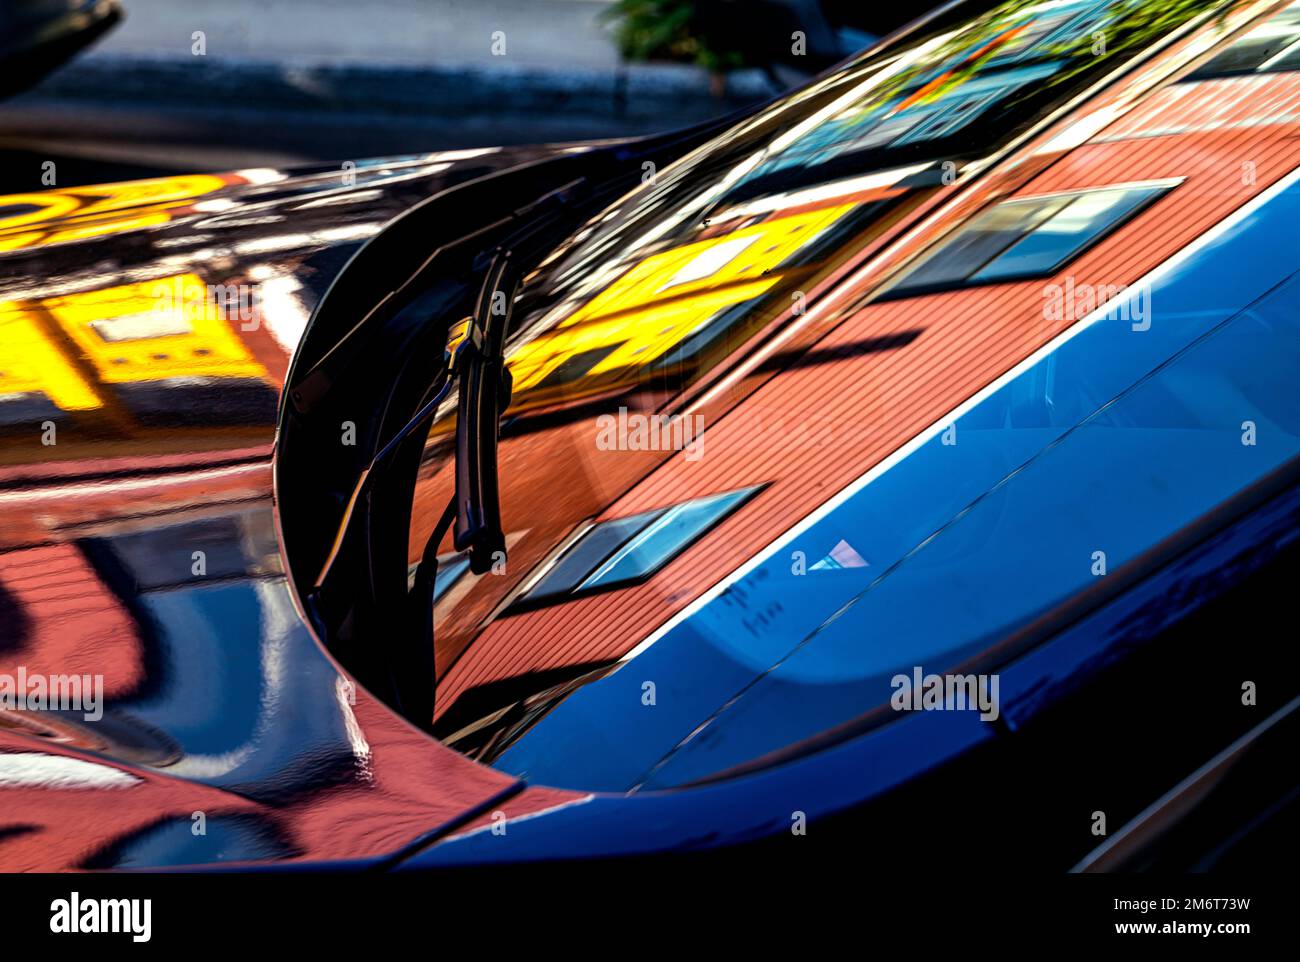 Farbreflexionen auf der Windschutzscheibe eines Autos Stockfoto